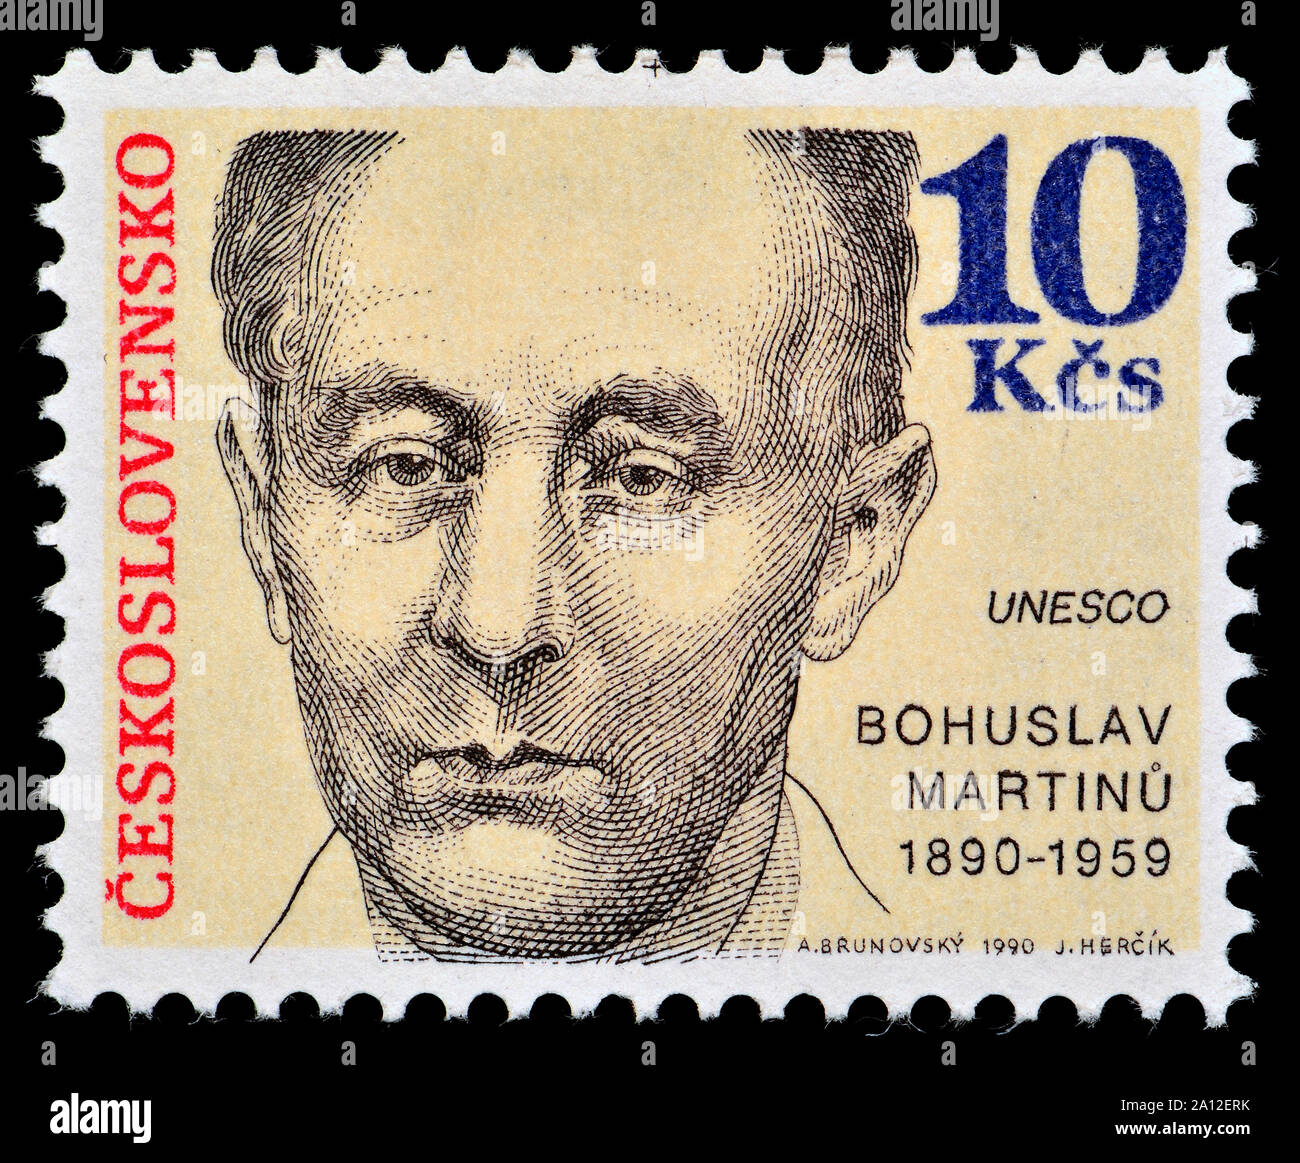 Timbre tchécoslovaque (1990) : Bohuslav Martinu (1890-1959) compositeur tchèque Banque D'Images